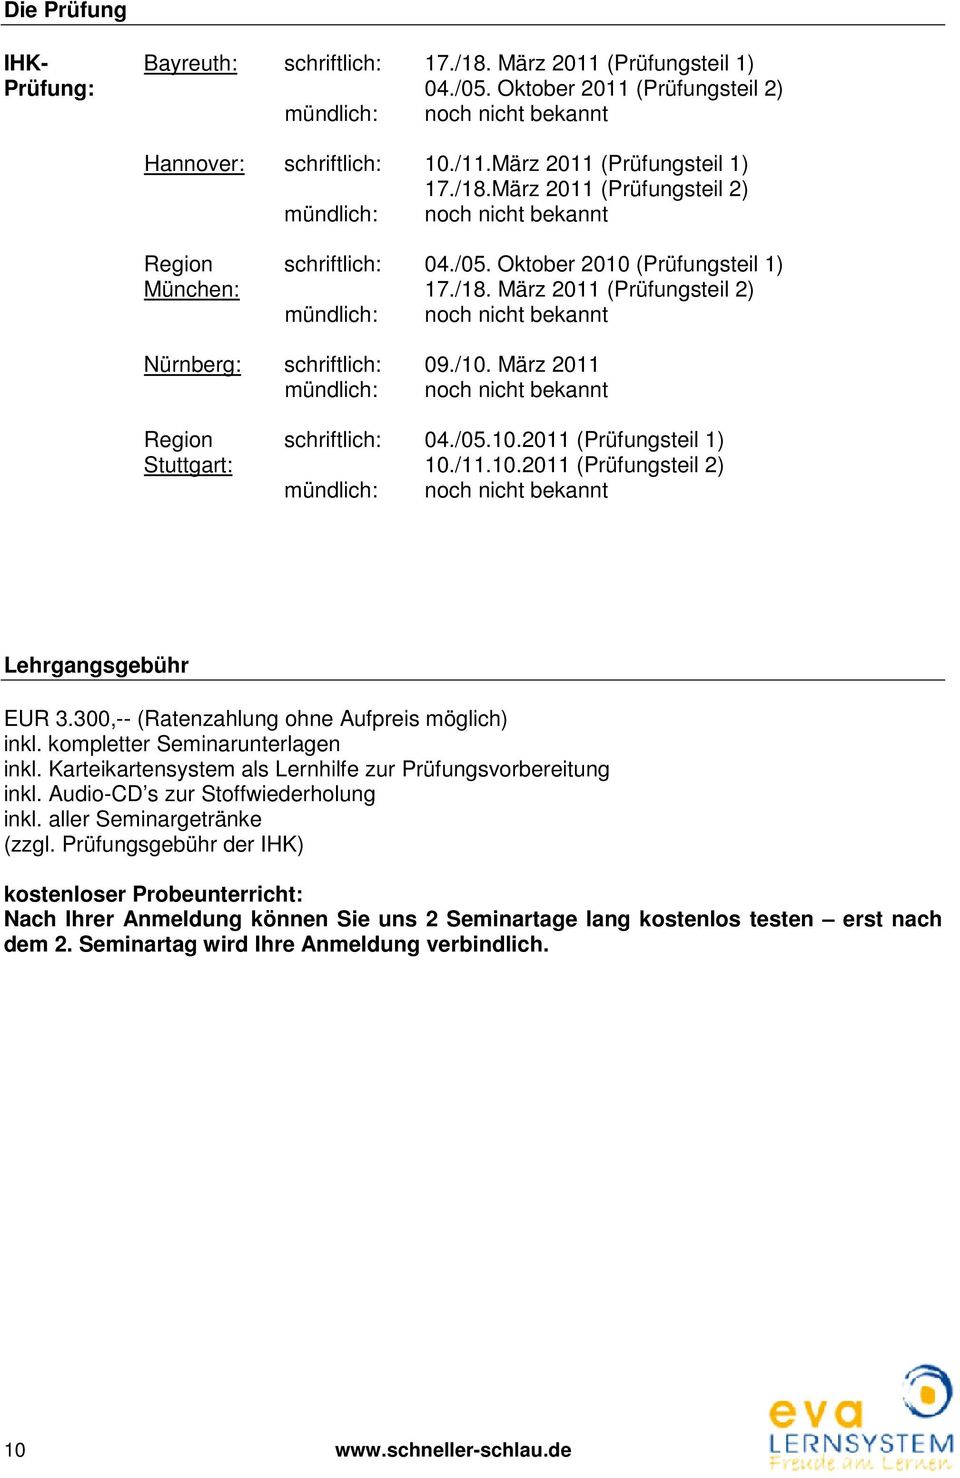 /10. März 2011 mündlich: noch nicht bekannt Region schriftlich: 04./05.10.2011 (Prüfungsteil 1) Stuttgart: 10./11.10.2011 (Prüfungsteil 2) mündlich: noch nicht bekannt Lehrgangsgebühr EUR 3.